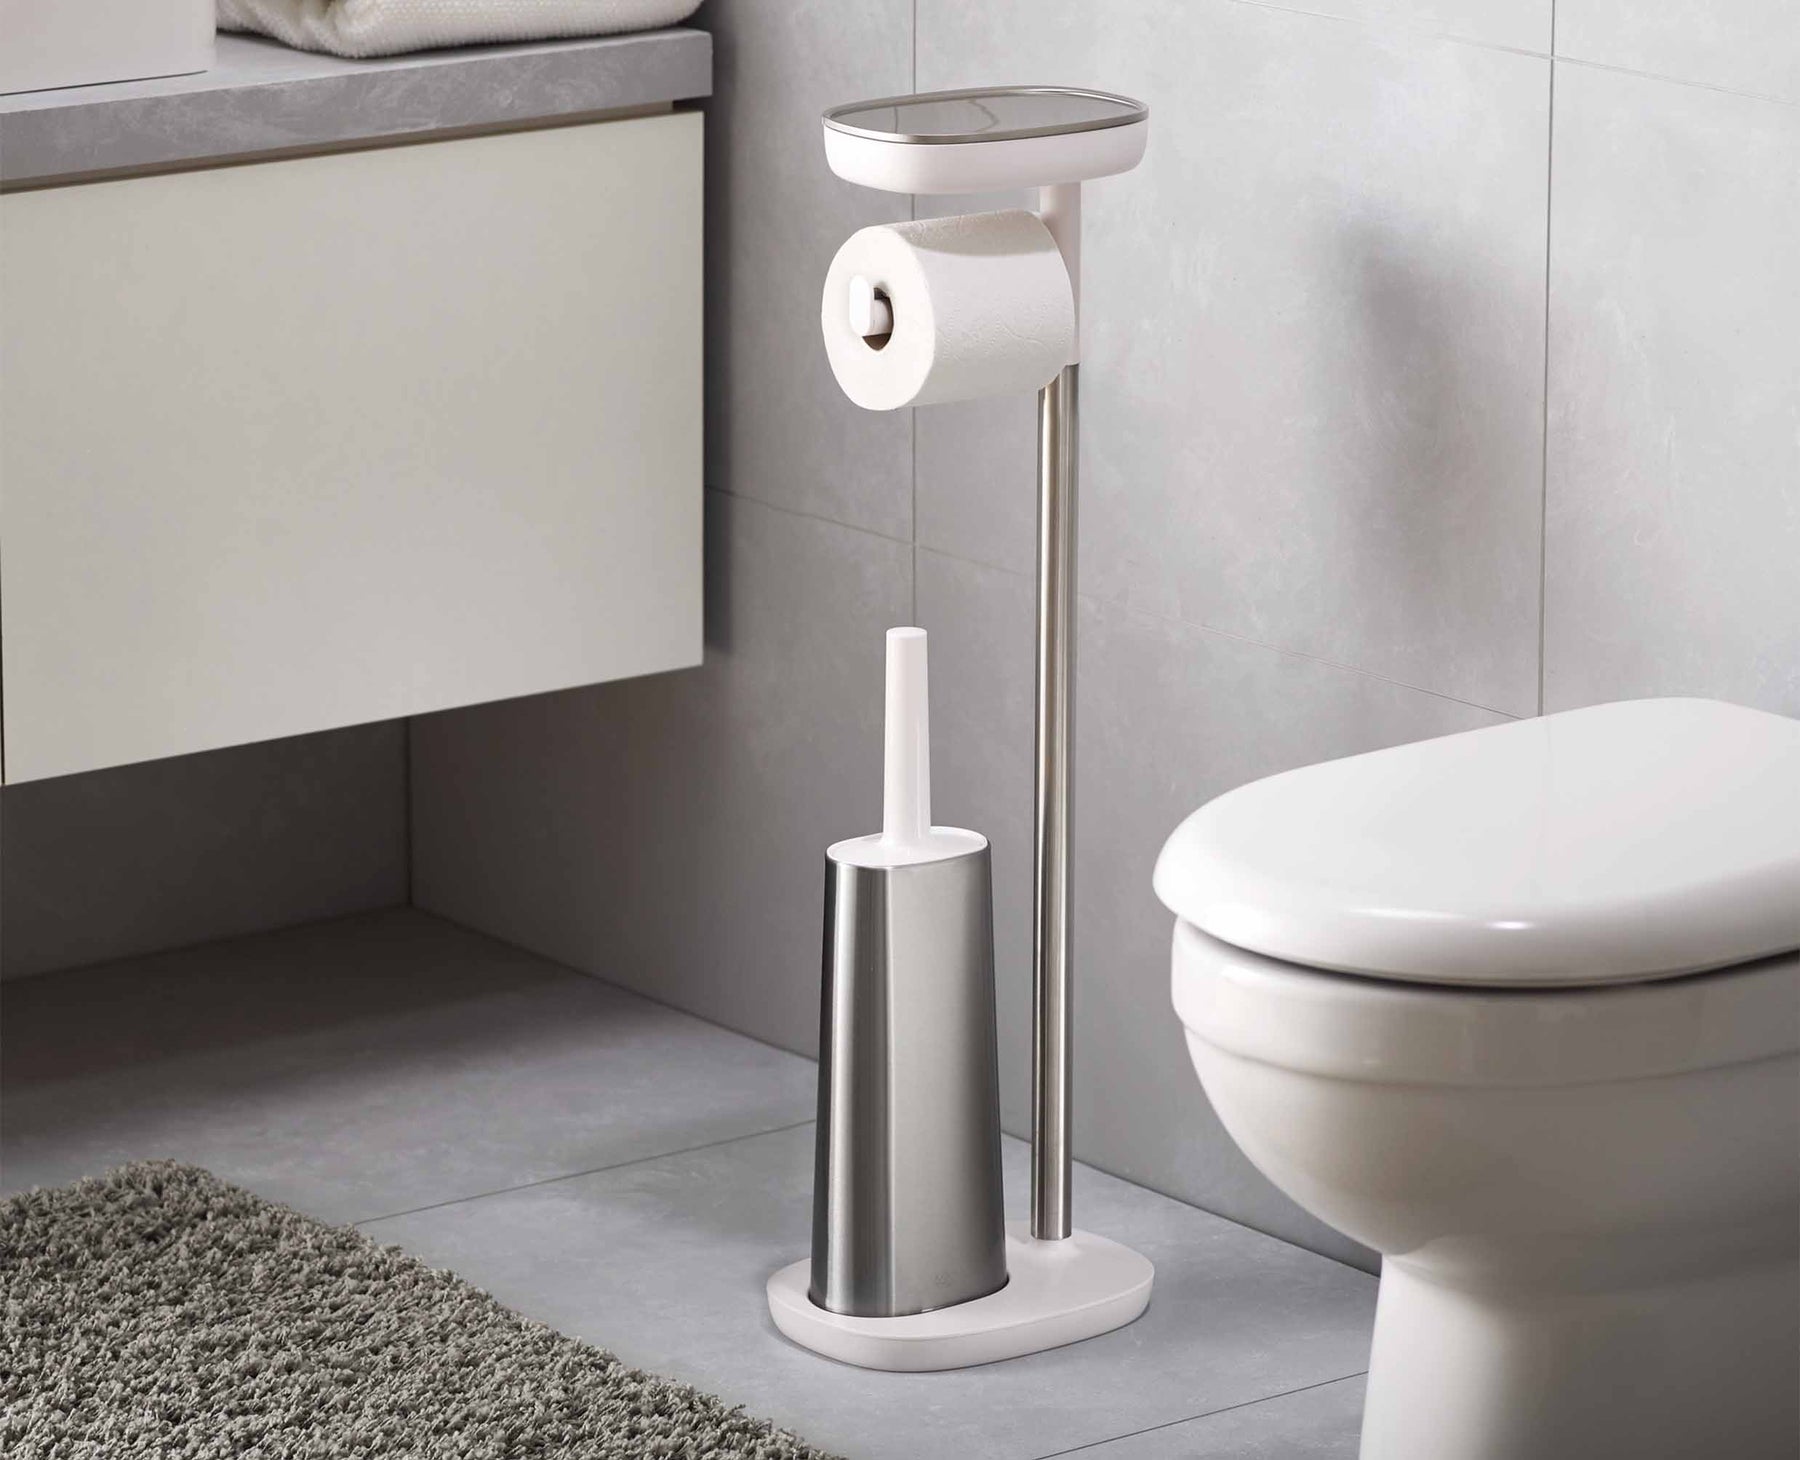 Toilet Paper Holder & Toilet Brush Set